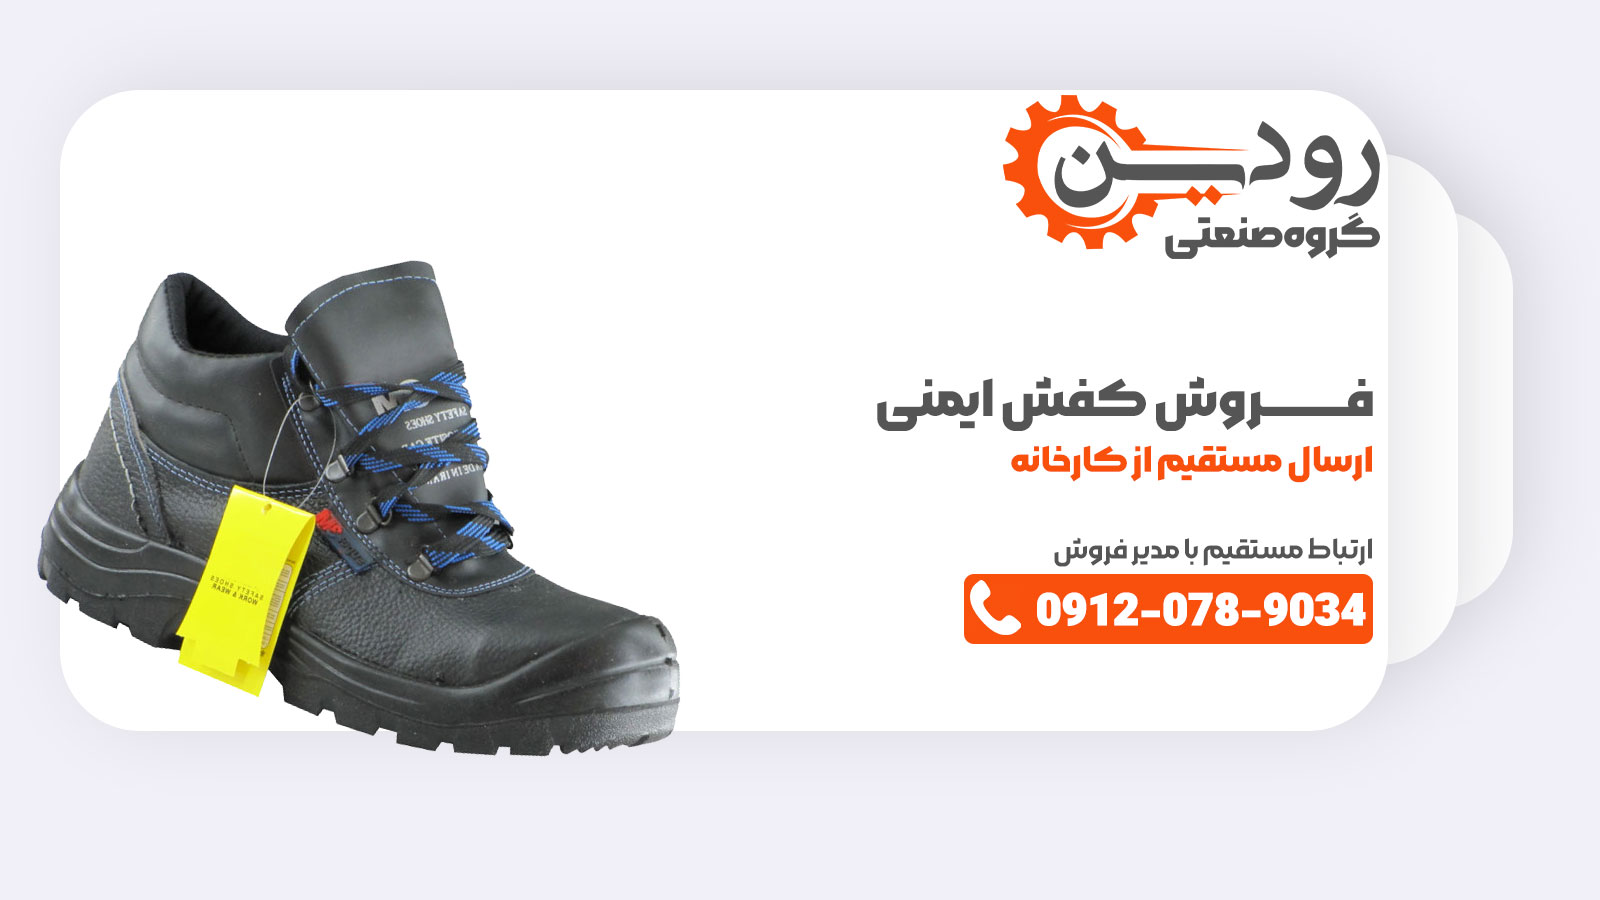 در کارخانه تولید کفش ایمنی در کرج سعی شده تا از مواد اولیه با کیفیت استفاده شود و به همین دلیل قیمت بالاتری نسبت به دیگر کارخانه ها دارد.